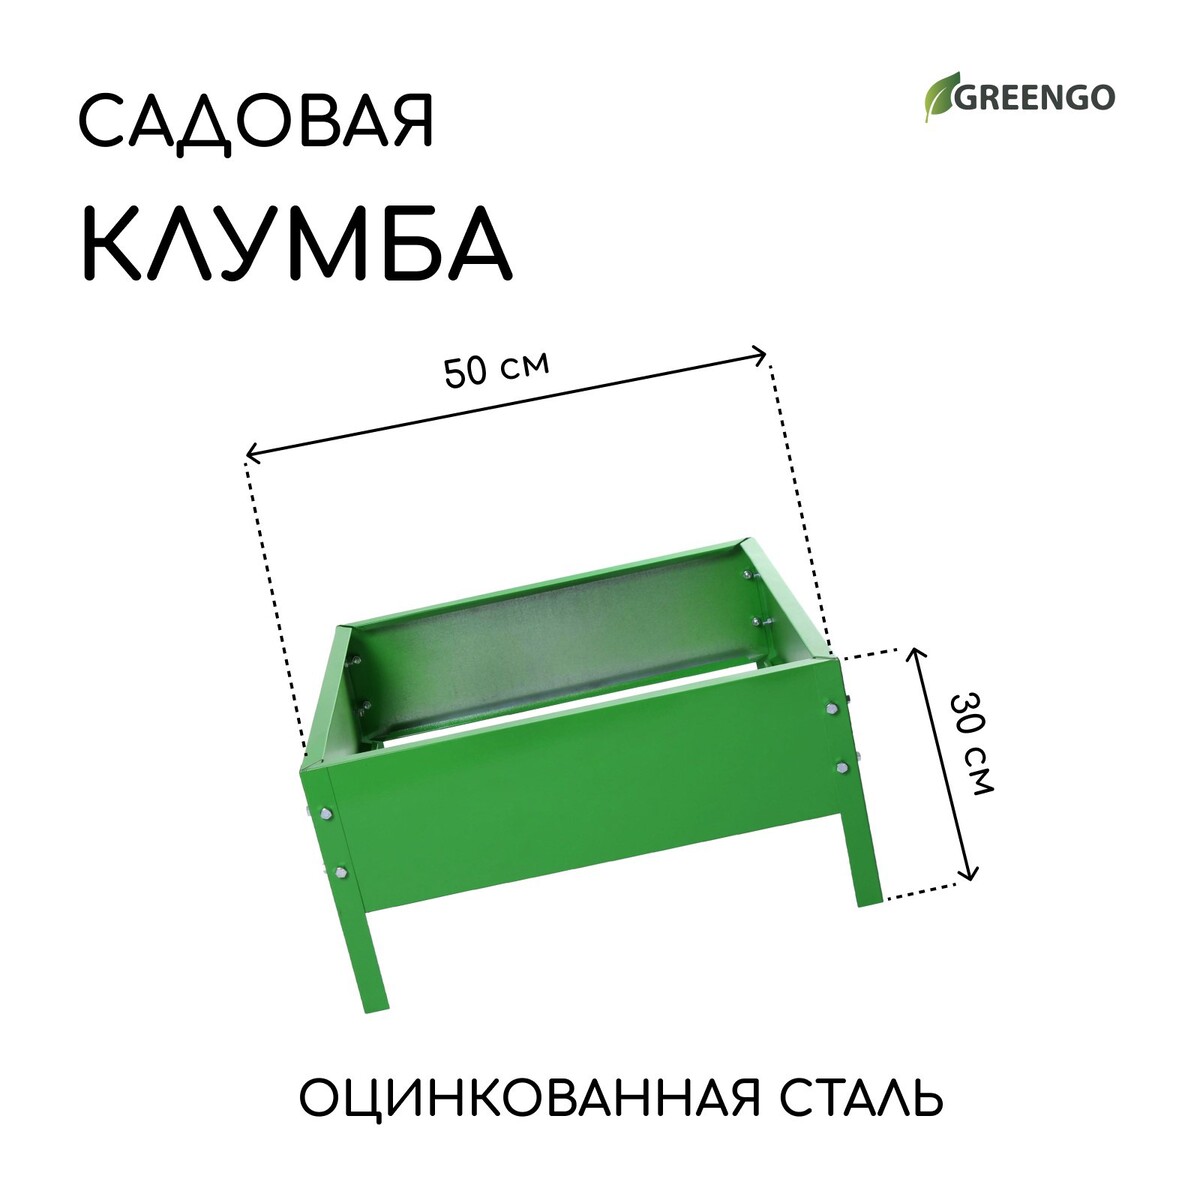 Клумба оцинкованная, 50 × 50 × 15 см, ярко-зеленая, greengo клумба оцинкованная d 80 см h 15 см ярко зеленая greengo